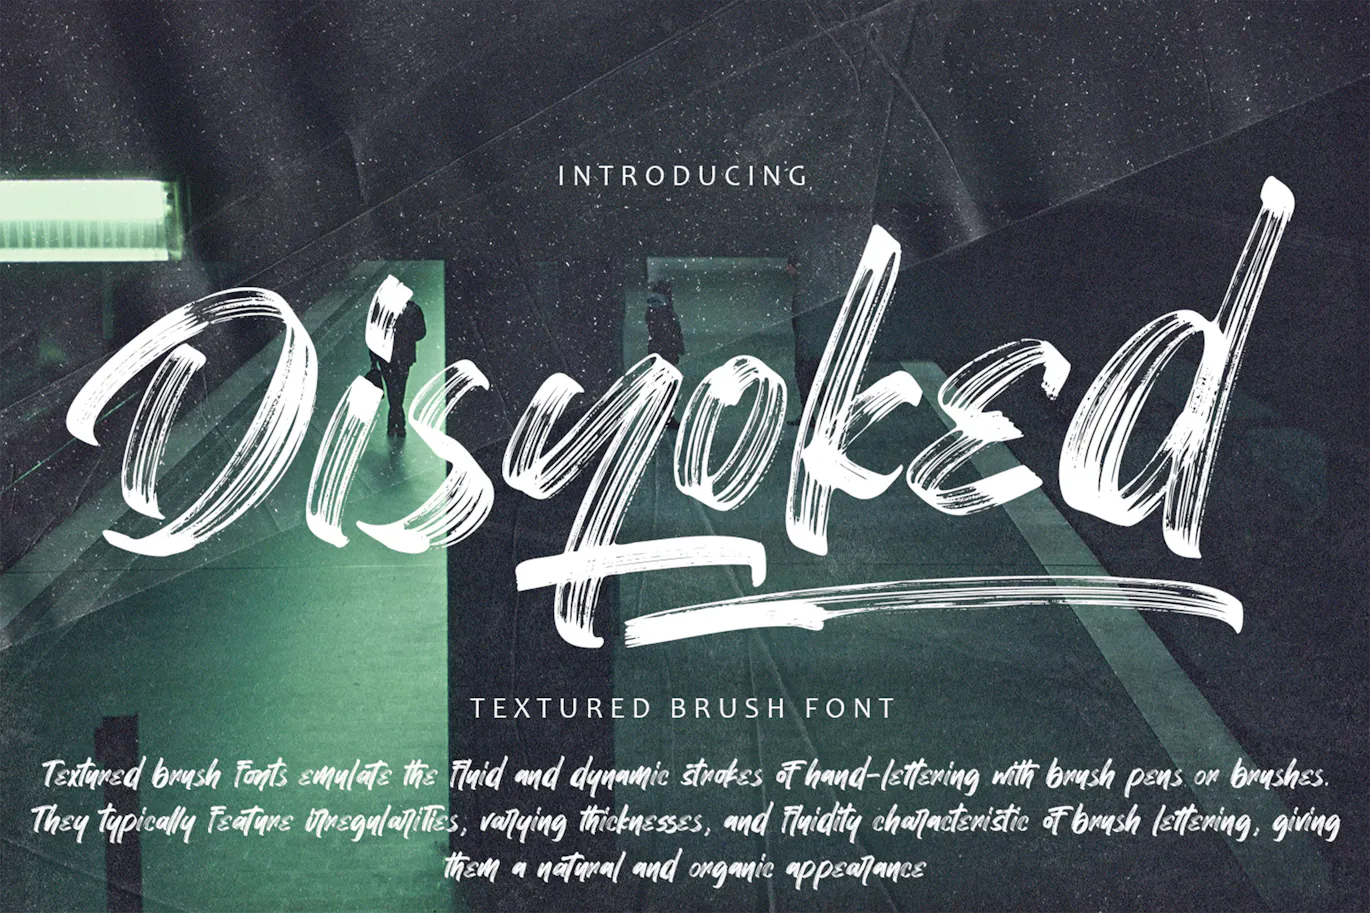 粗旷纹理的英文手写笔刷字体 - Disyoked - Textured Brush Font 设计字体 第1张